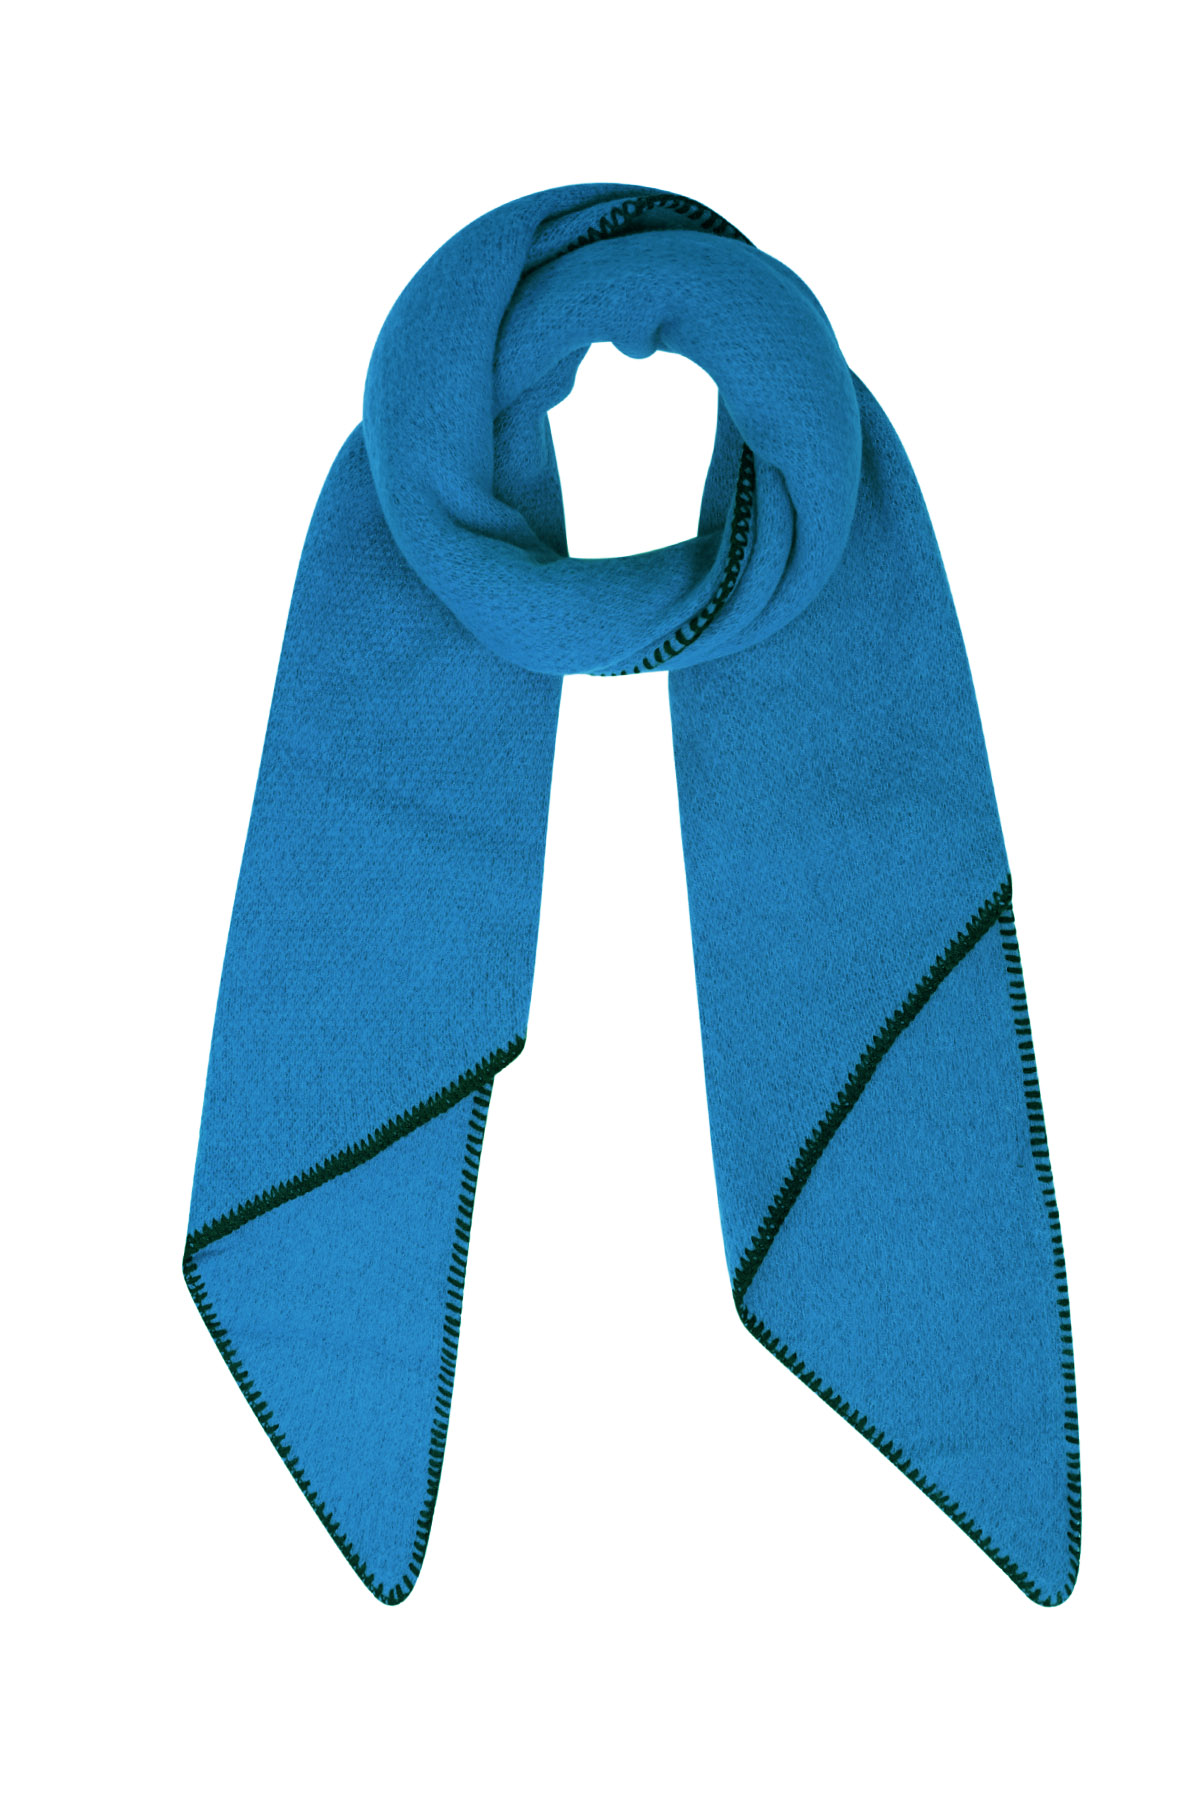 Sciarpa invernale monocolore con cuciture nere - blu scuro h5 